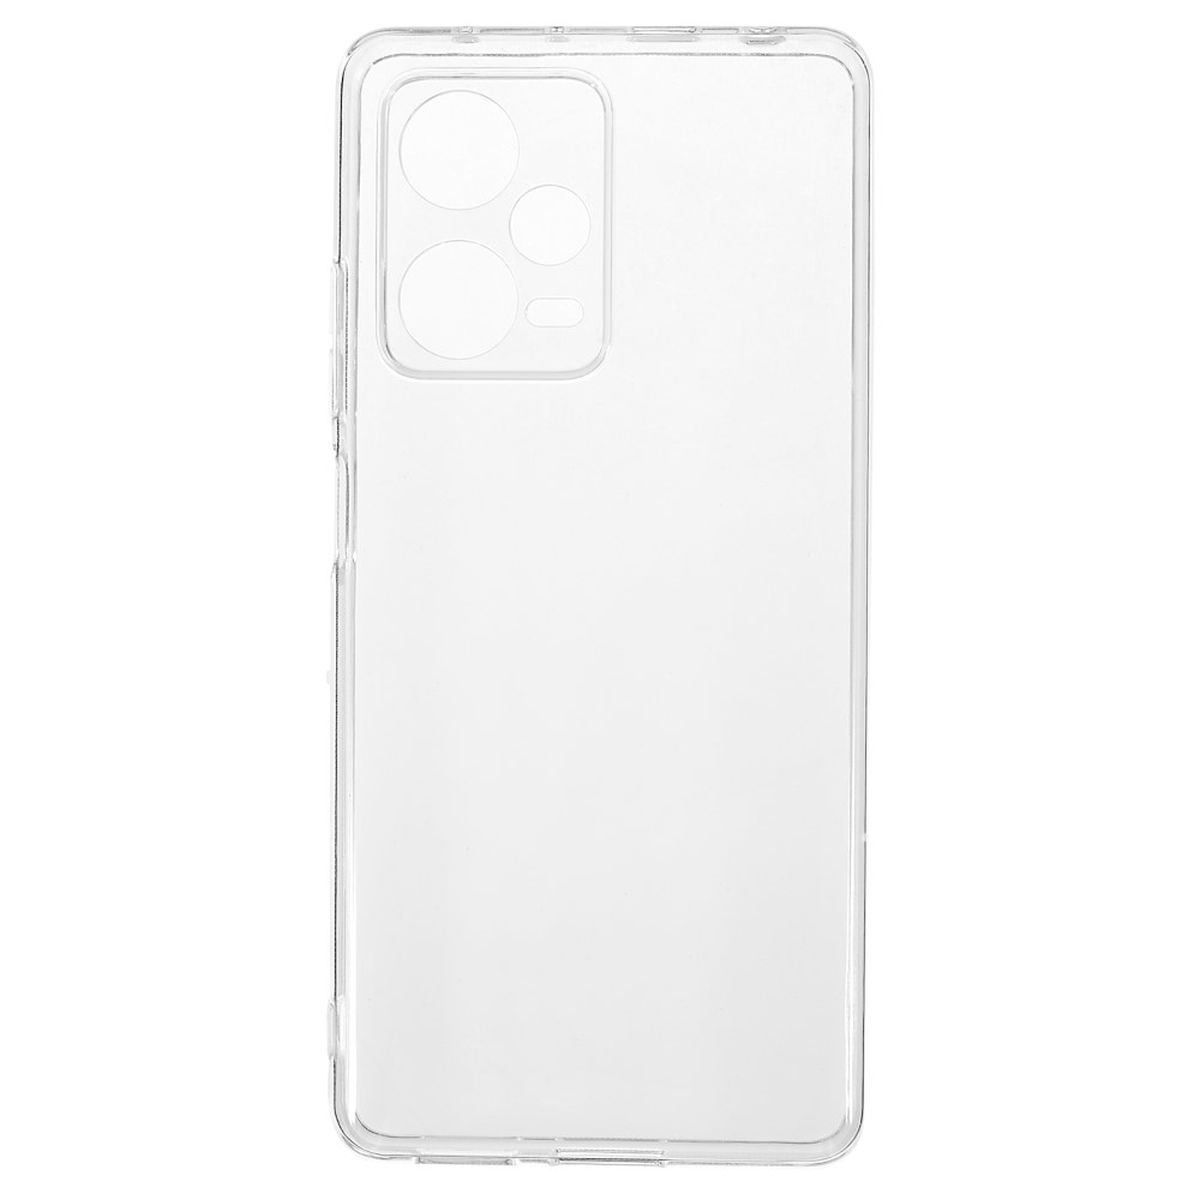 Redmi COVERKINGZ 12 Note Handyhülle 5G, dünn, Transparent Backcover, Xiaomi, Case Ultra